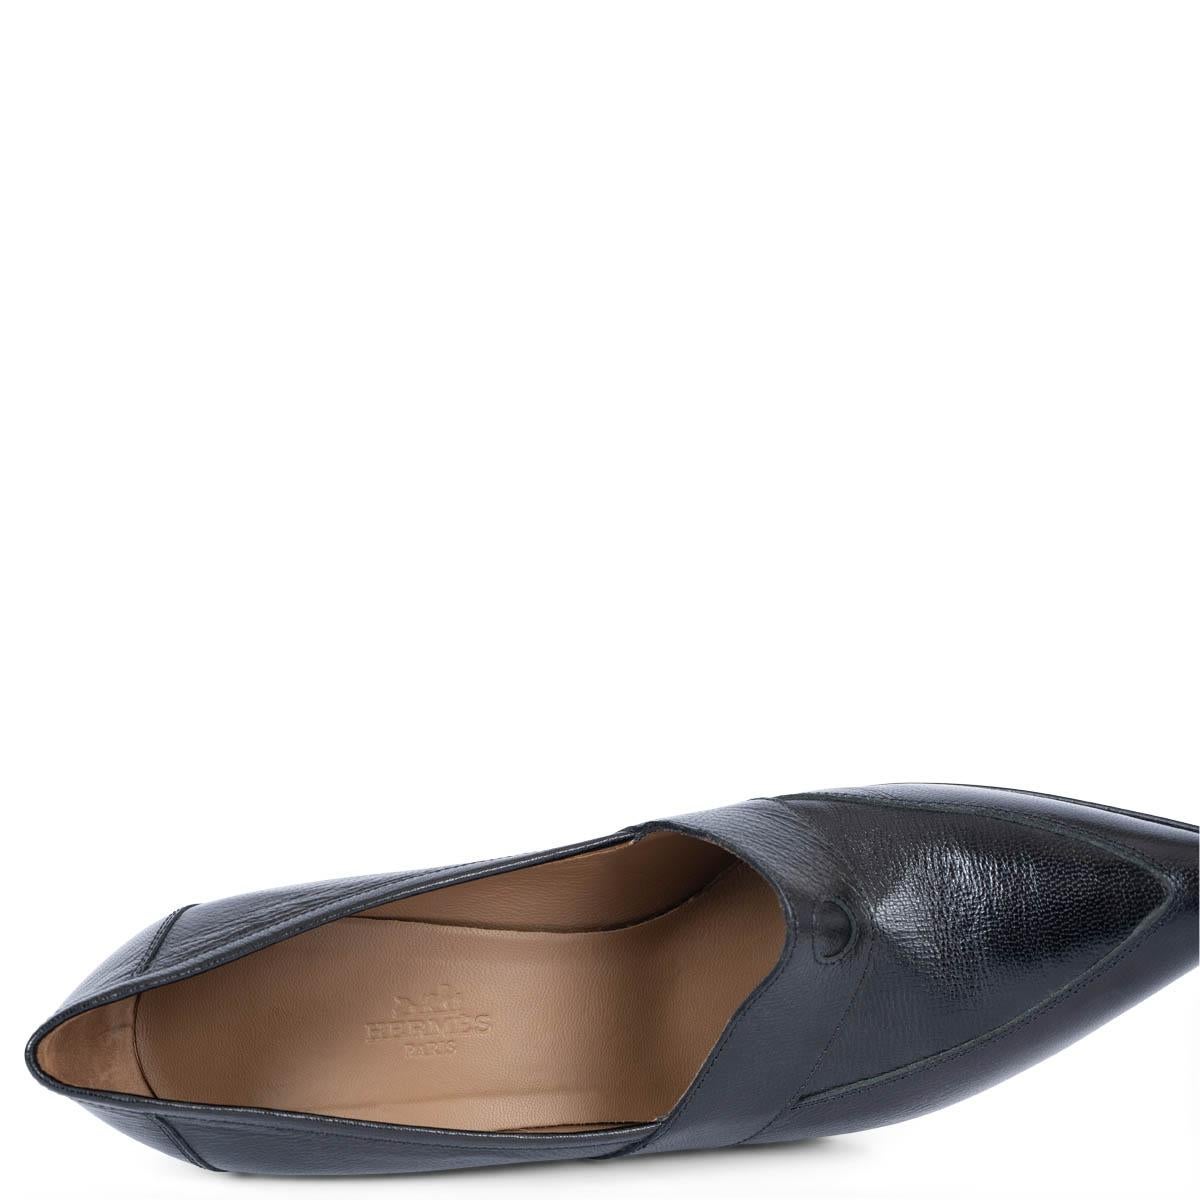 HERMES cuir noir POINTED TOE TOE WEDGE Pumps Shoes 39 en vente 3